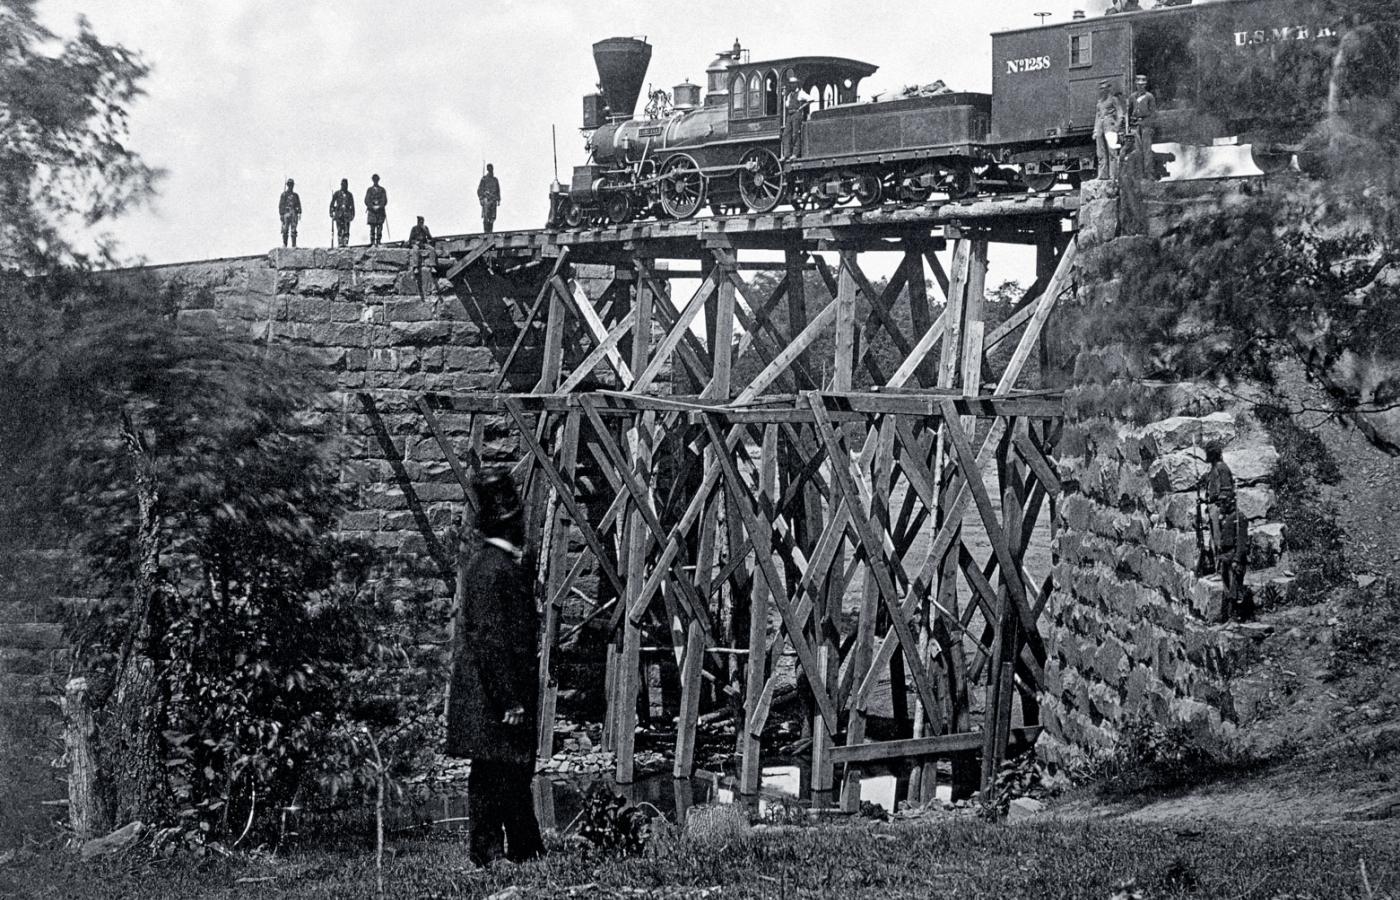 Pociąg w okolicach Manassas w Wirginii podczas wojny secesyjnej; fotografia z 1863 r.